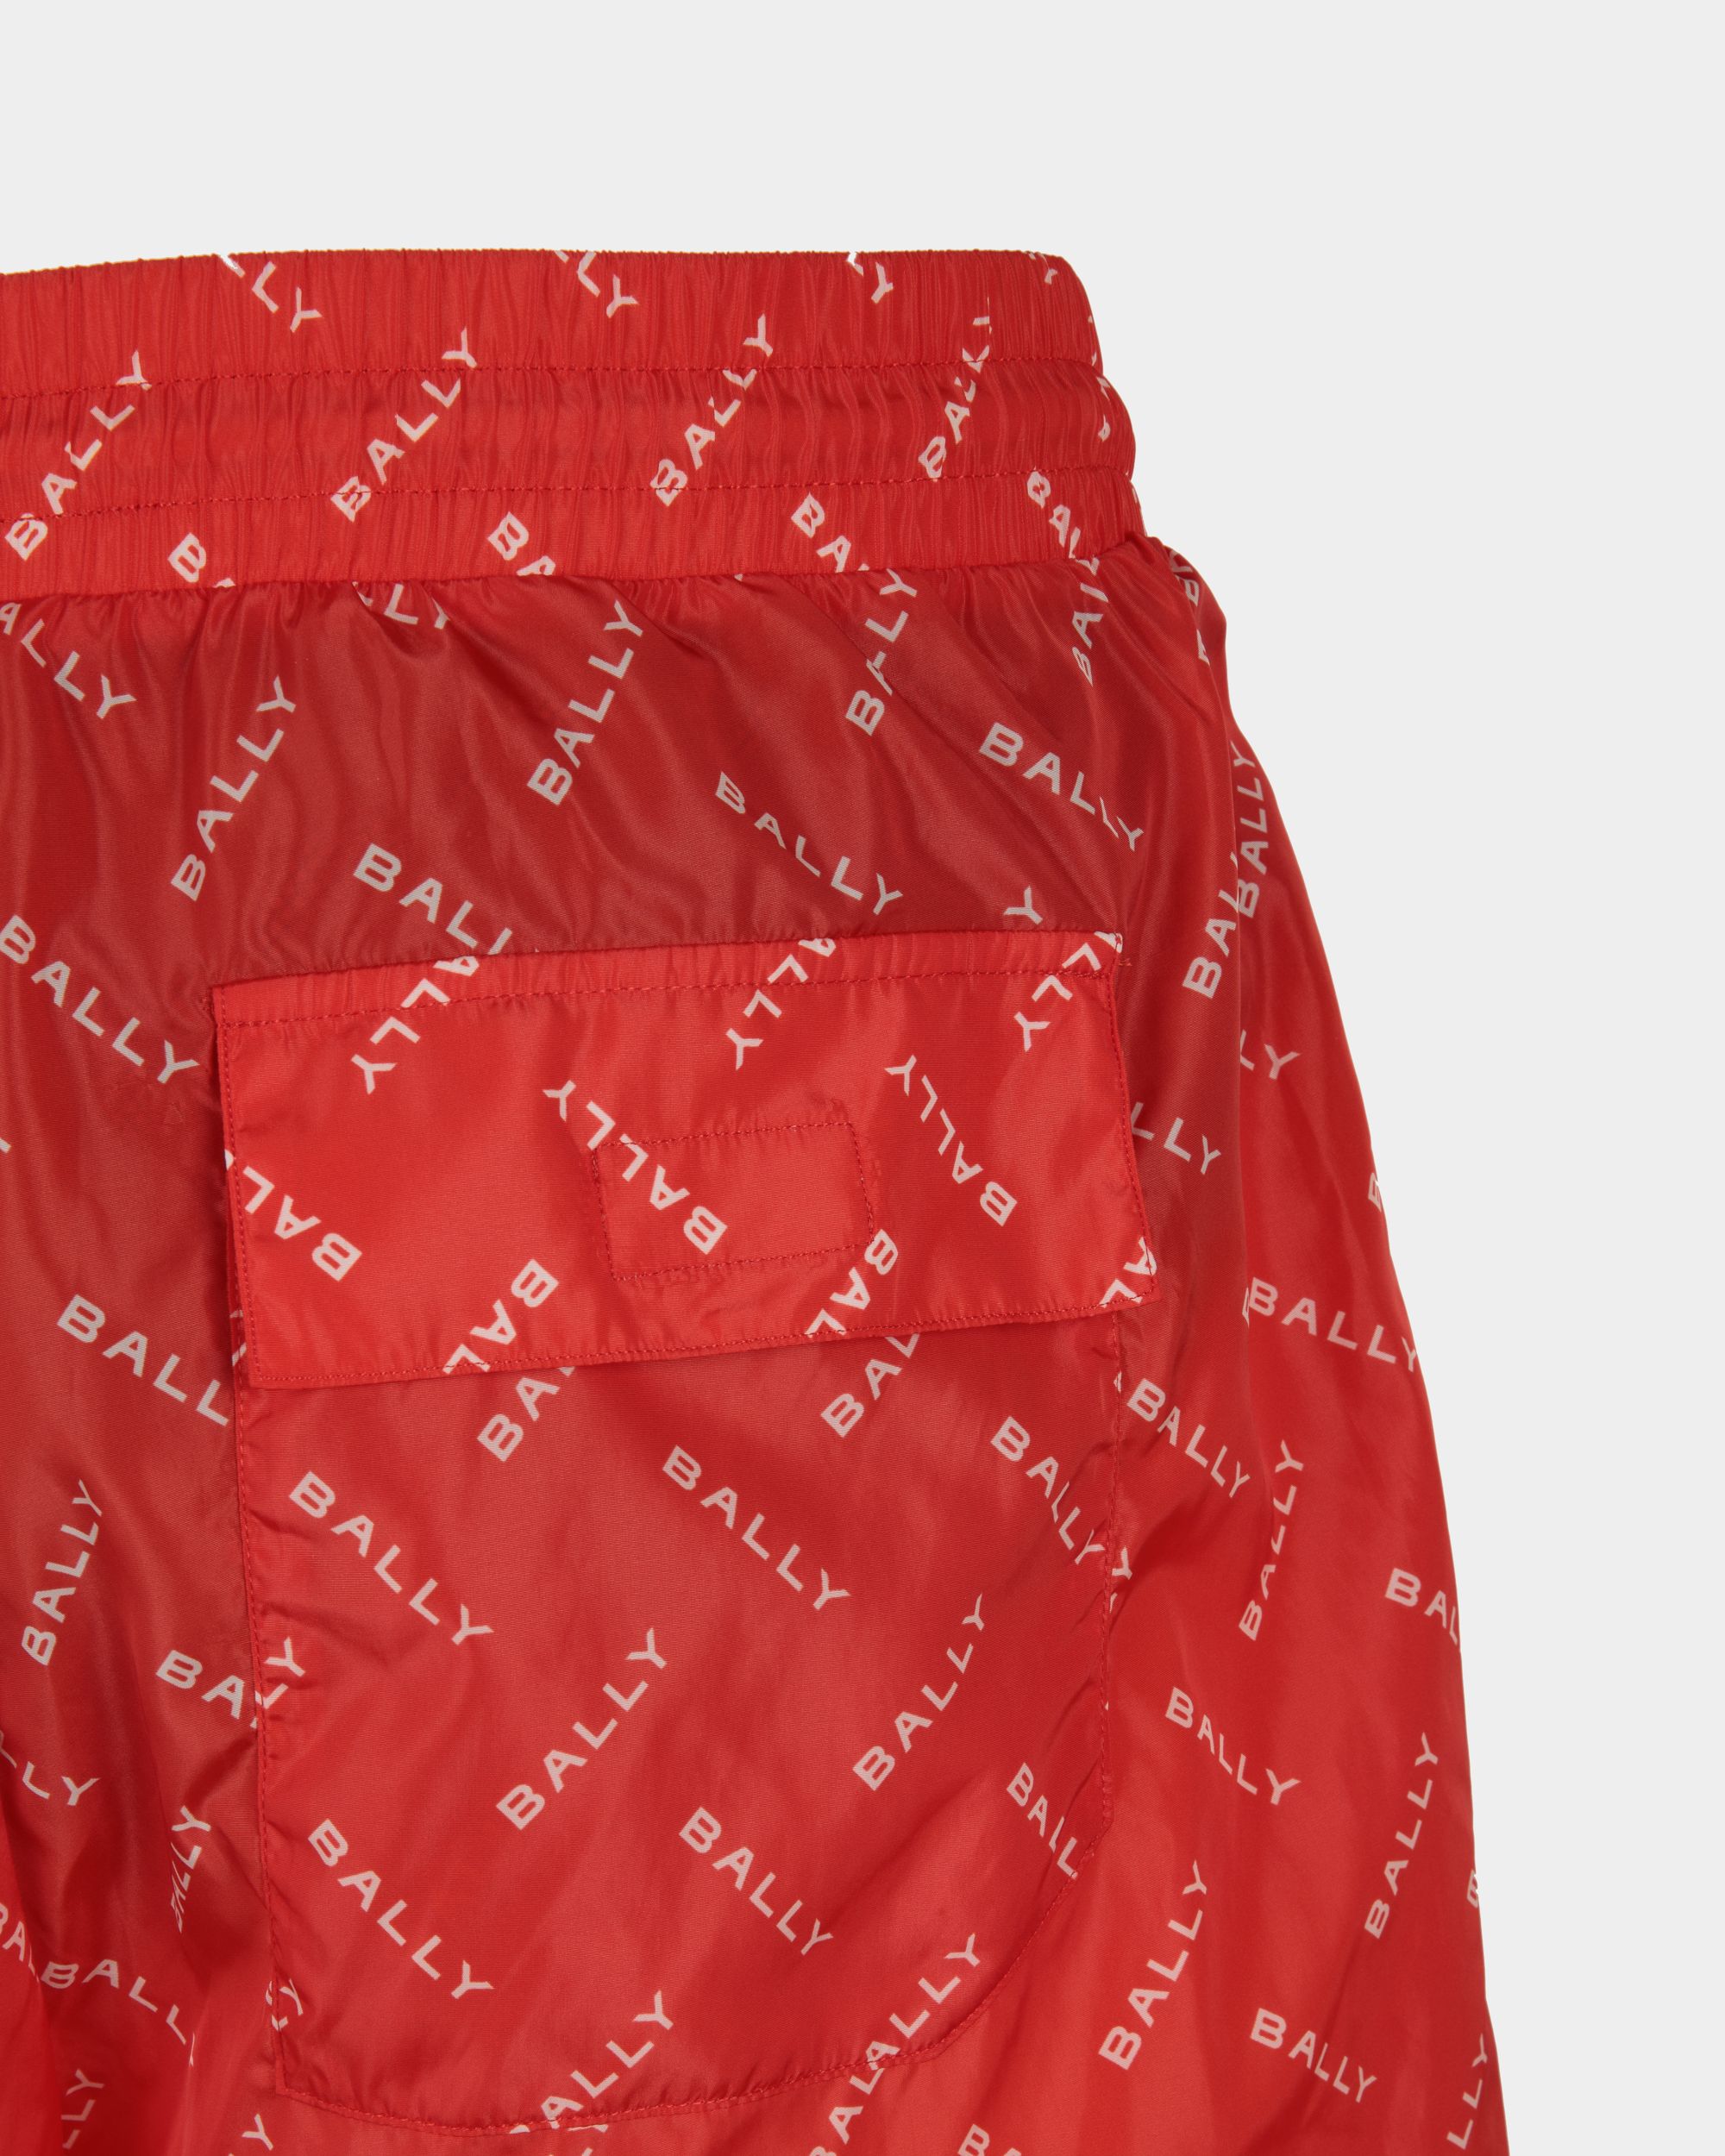 Men's Swim Trunks in Red Fabric| Bally | On Model Detail